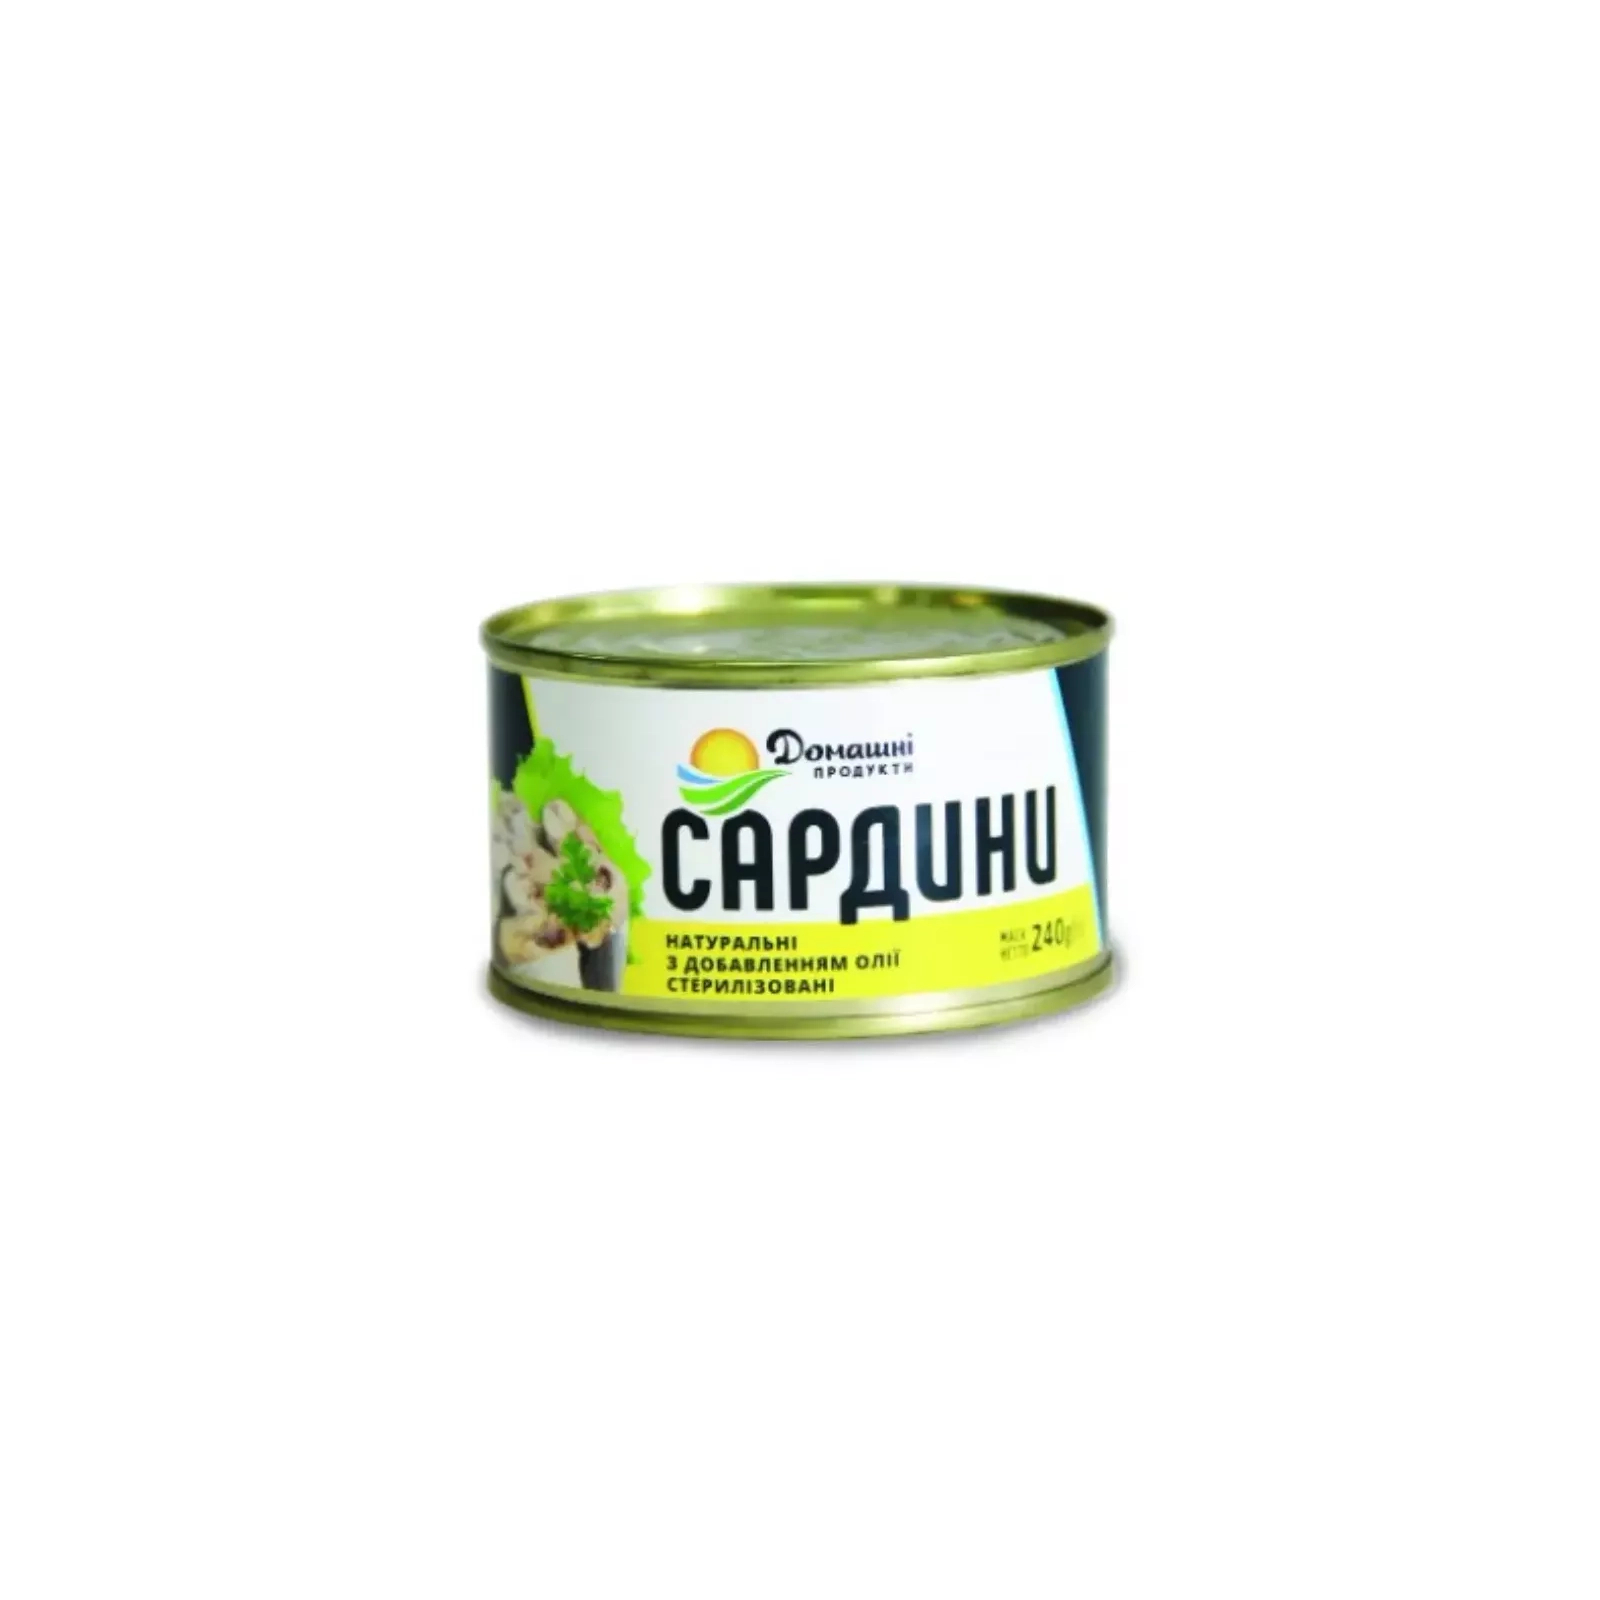 Рыбные консервы Домашні продукти Сардины в масле 240 г (4820186120332)